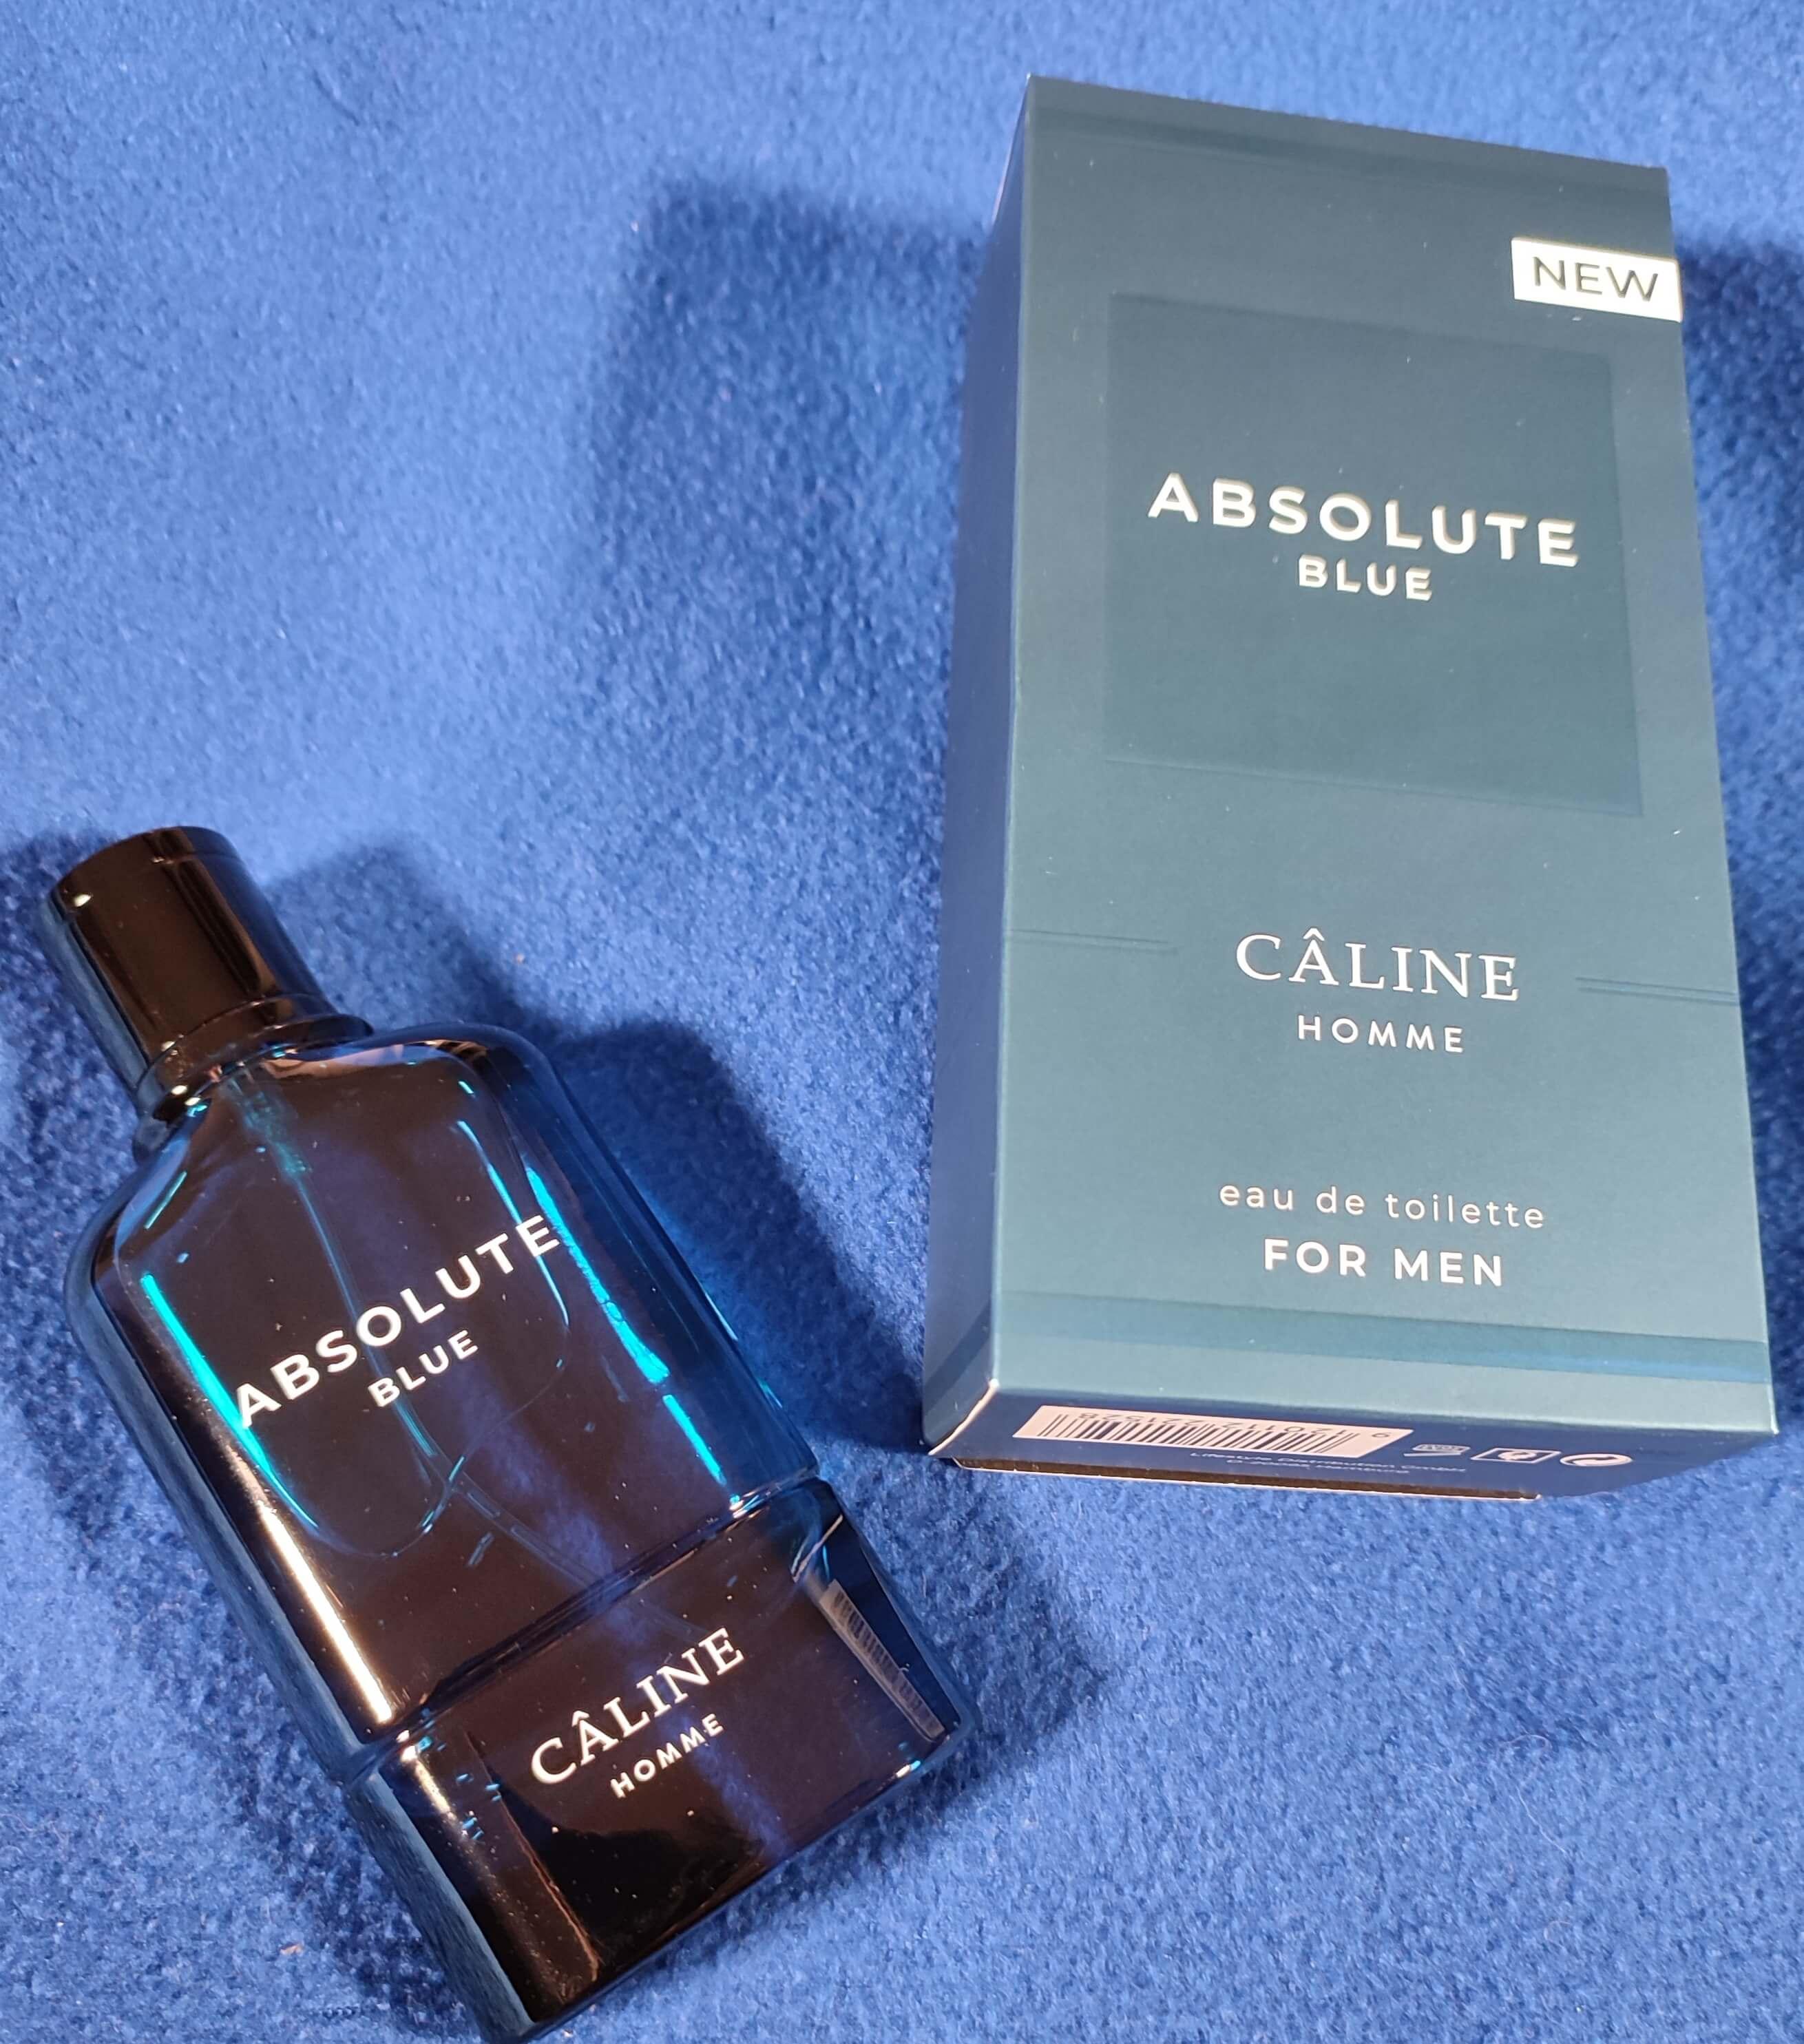 Parfüm der Marke "Caline Homme" - im Duft "Absolute Blue" präsentiert auf einem blauen Hintergrund